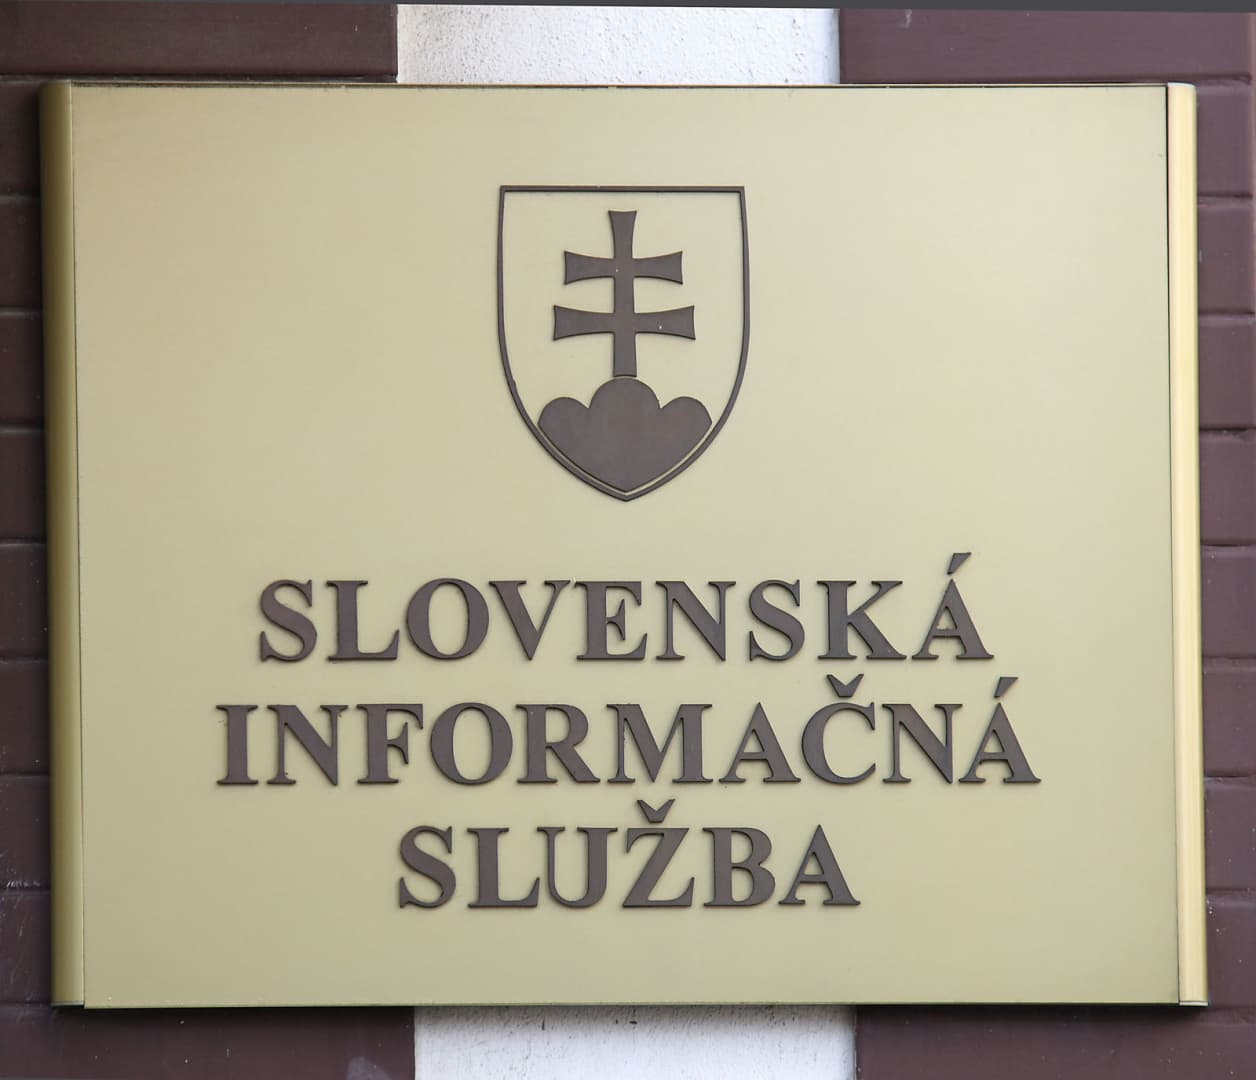 Újabb piszkos ügy a Szlovák Titkosszolgálat köreiből – így keresett magának mellékest a korrupcióval gyanúsított SIS-ügynök